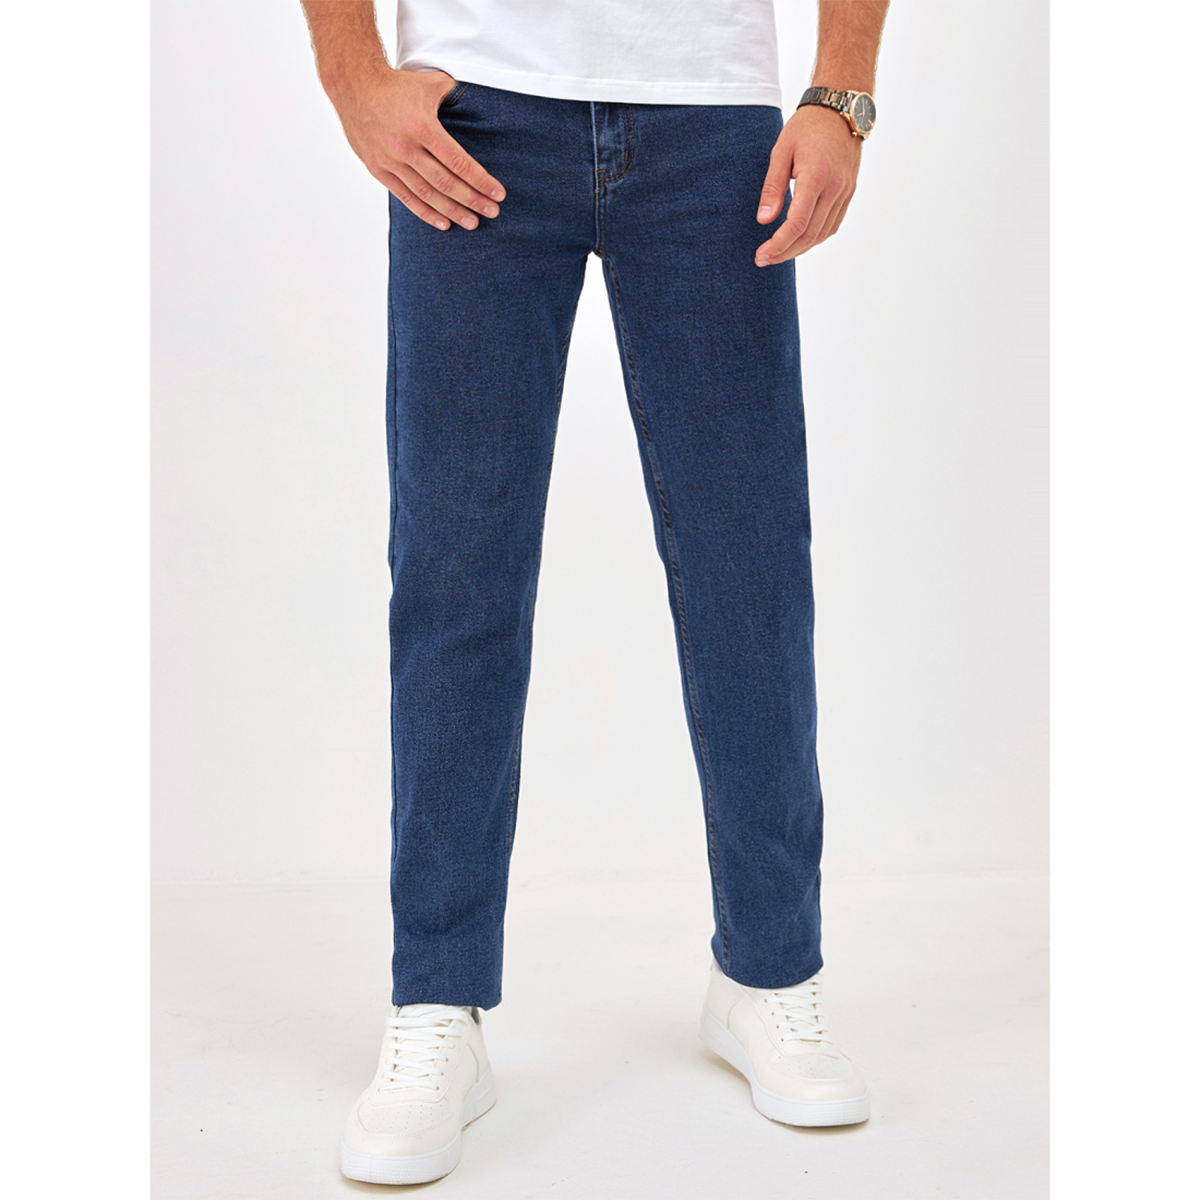 Джинсы мужские Barouz Jeans classic синие 42